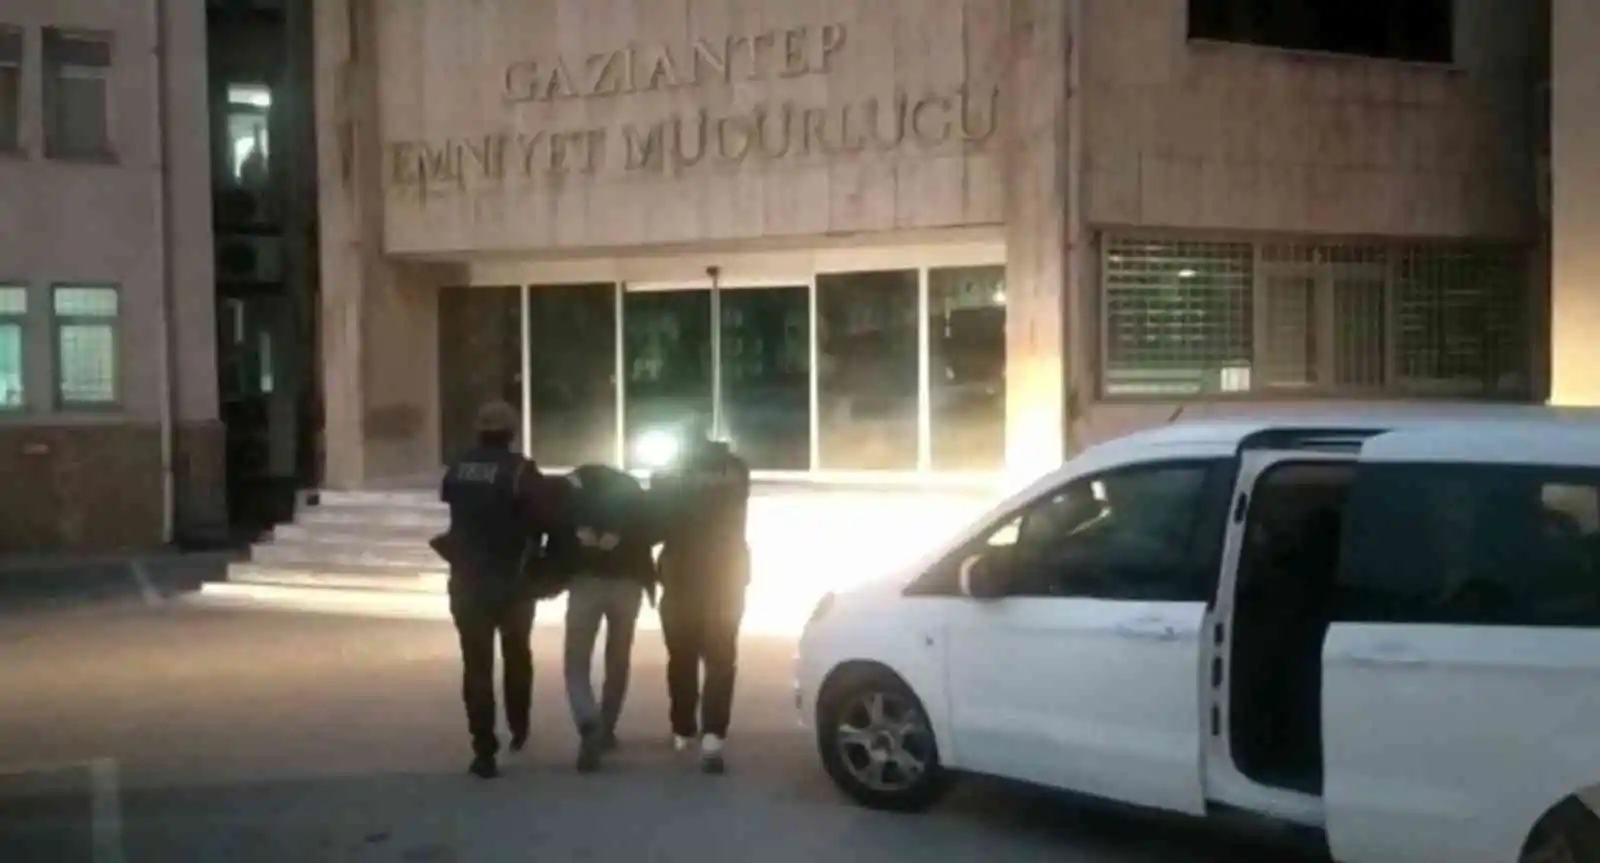 Gaziantep'te PKK/KCK operasyonu: 1 gözaltı
